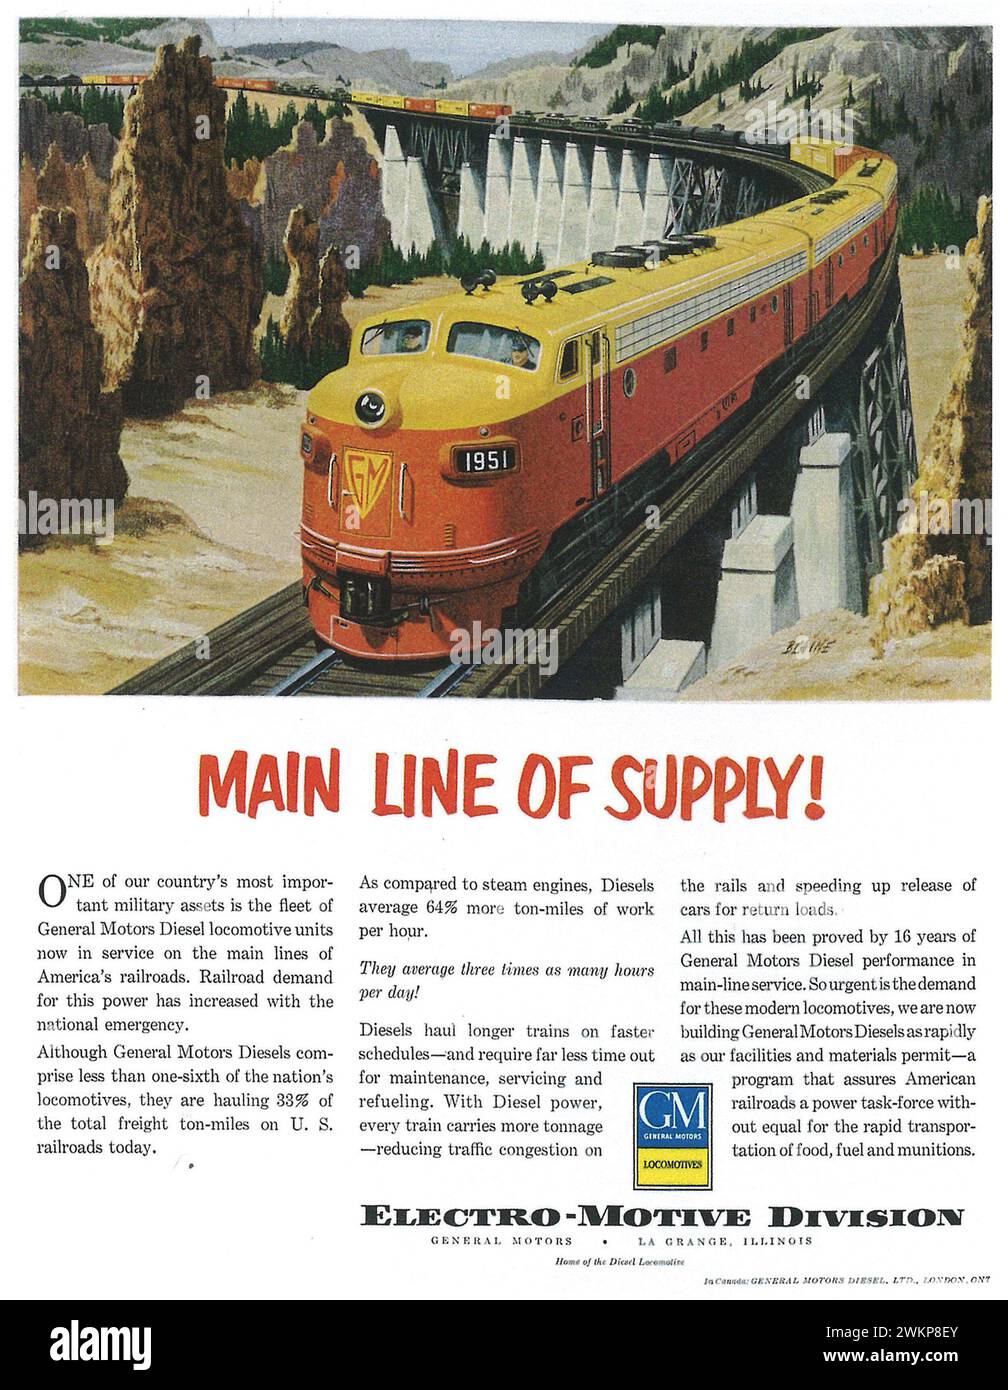 1961 General Motors locomotive Stampa ad. Linea principale di alimentazione della locomotiva elettromotrice Foto Stock